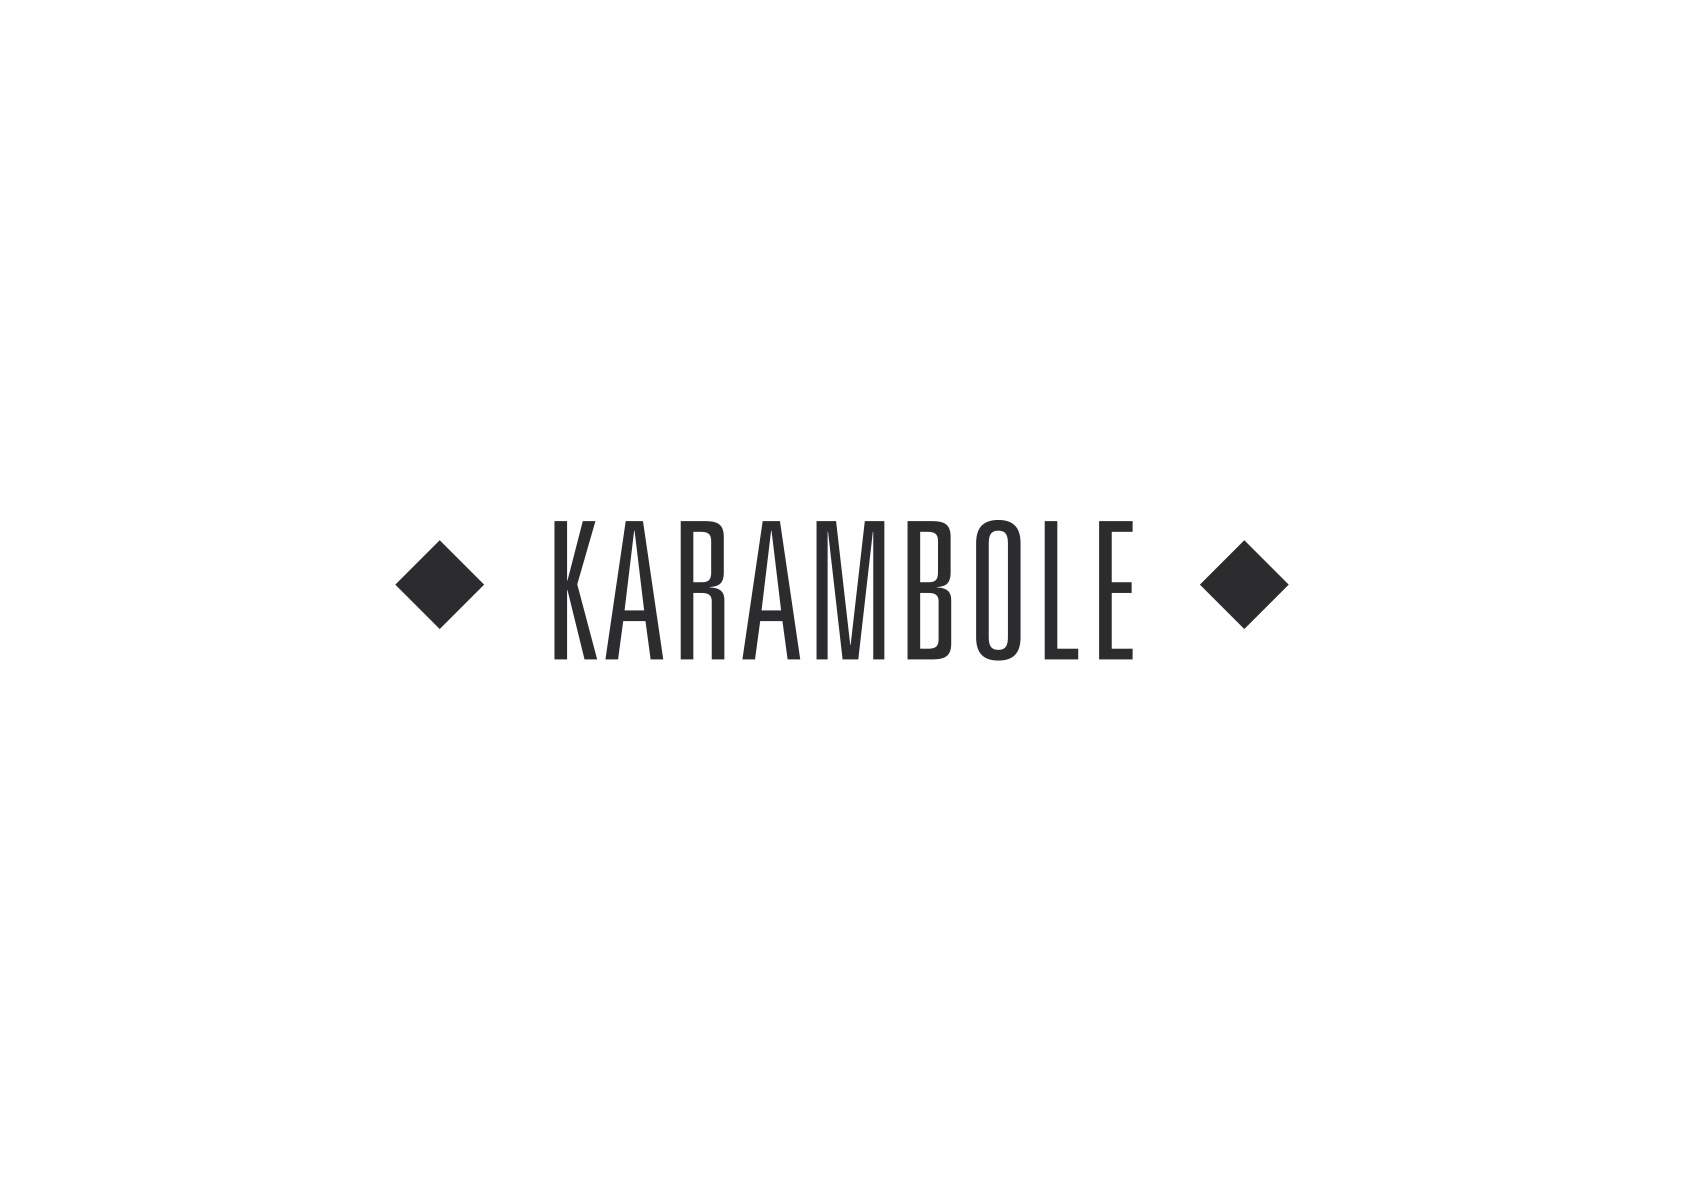 La Karambole invite Momo's Basement - フライヤー表